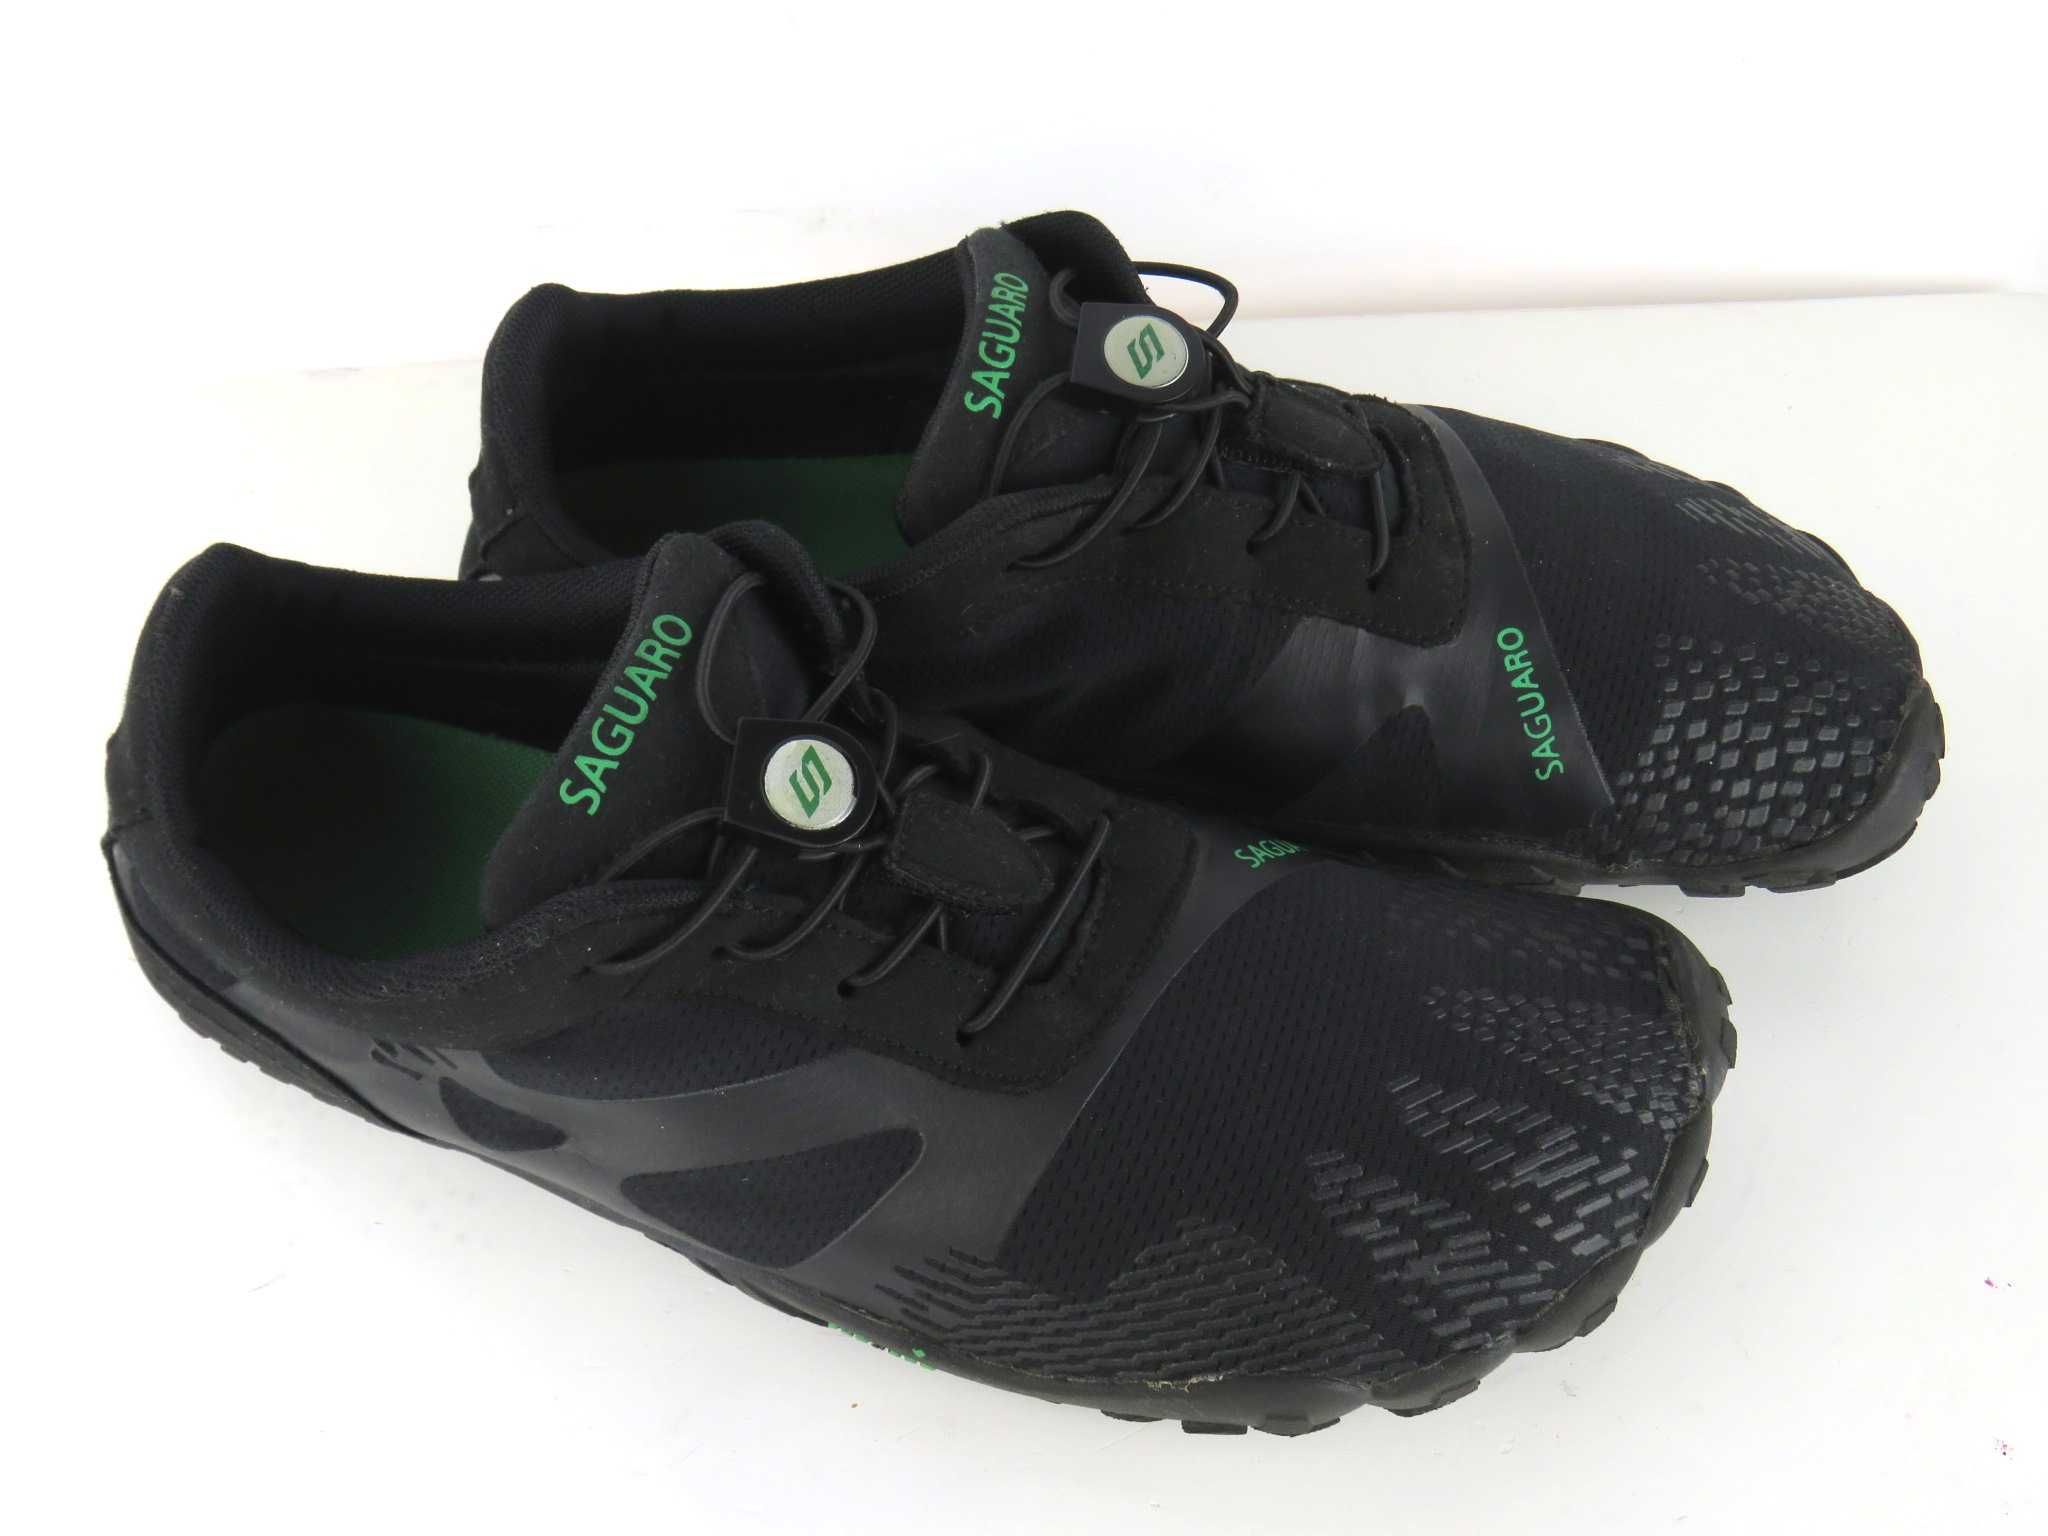 Saguaro buty do biegania wody chodzenia boso siłownia fitnes r 43 -50%